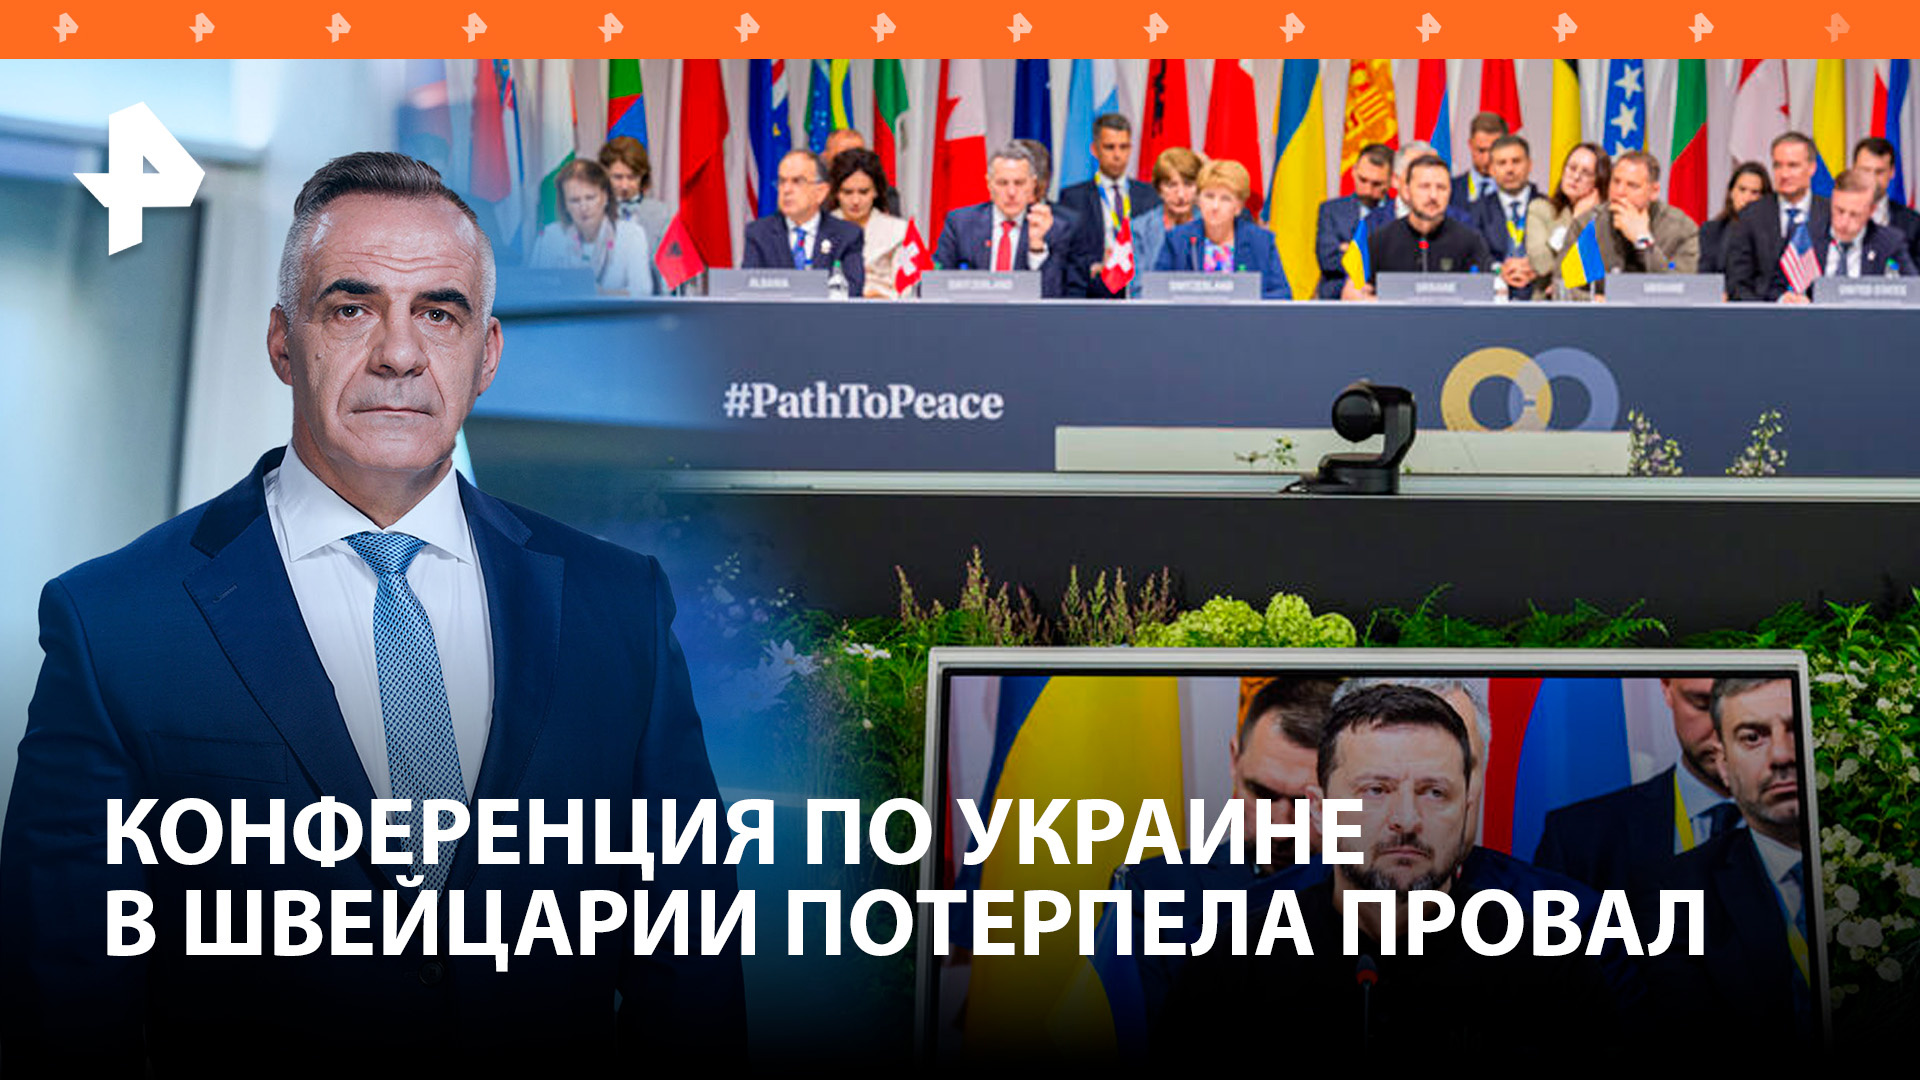 Милитаристское шоу: саммит по Украине в Швейцарии потерпел провал / Итоги недели с Петром Марченко